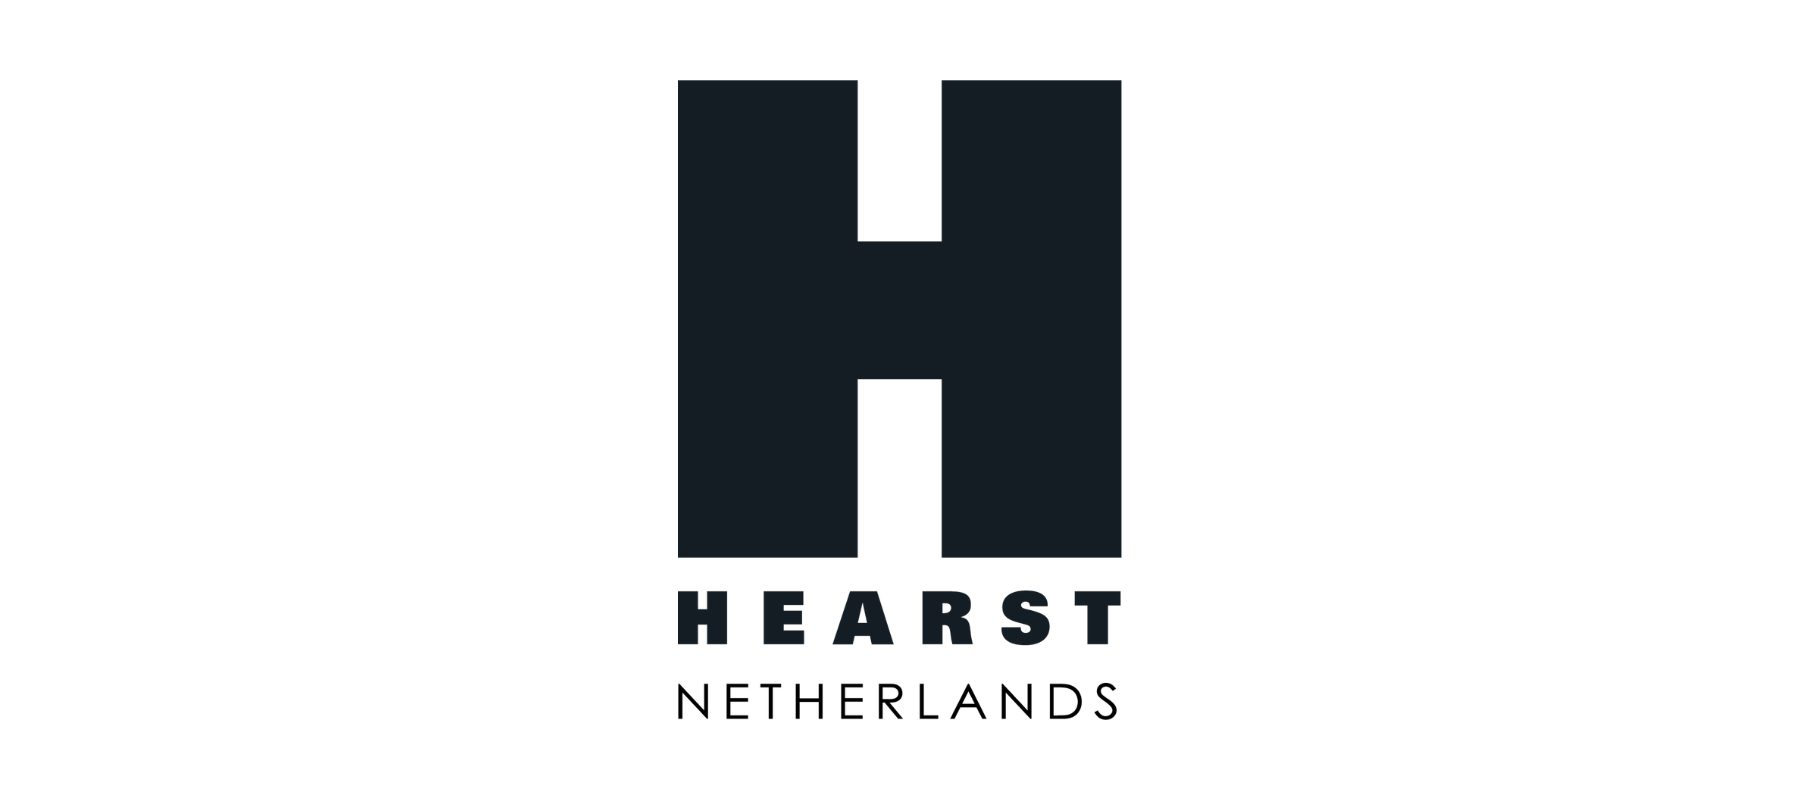 [Vacatures] Hearst Netherlands zoekt een ICT Specialist